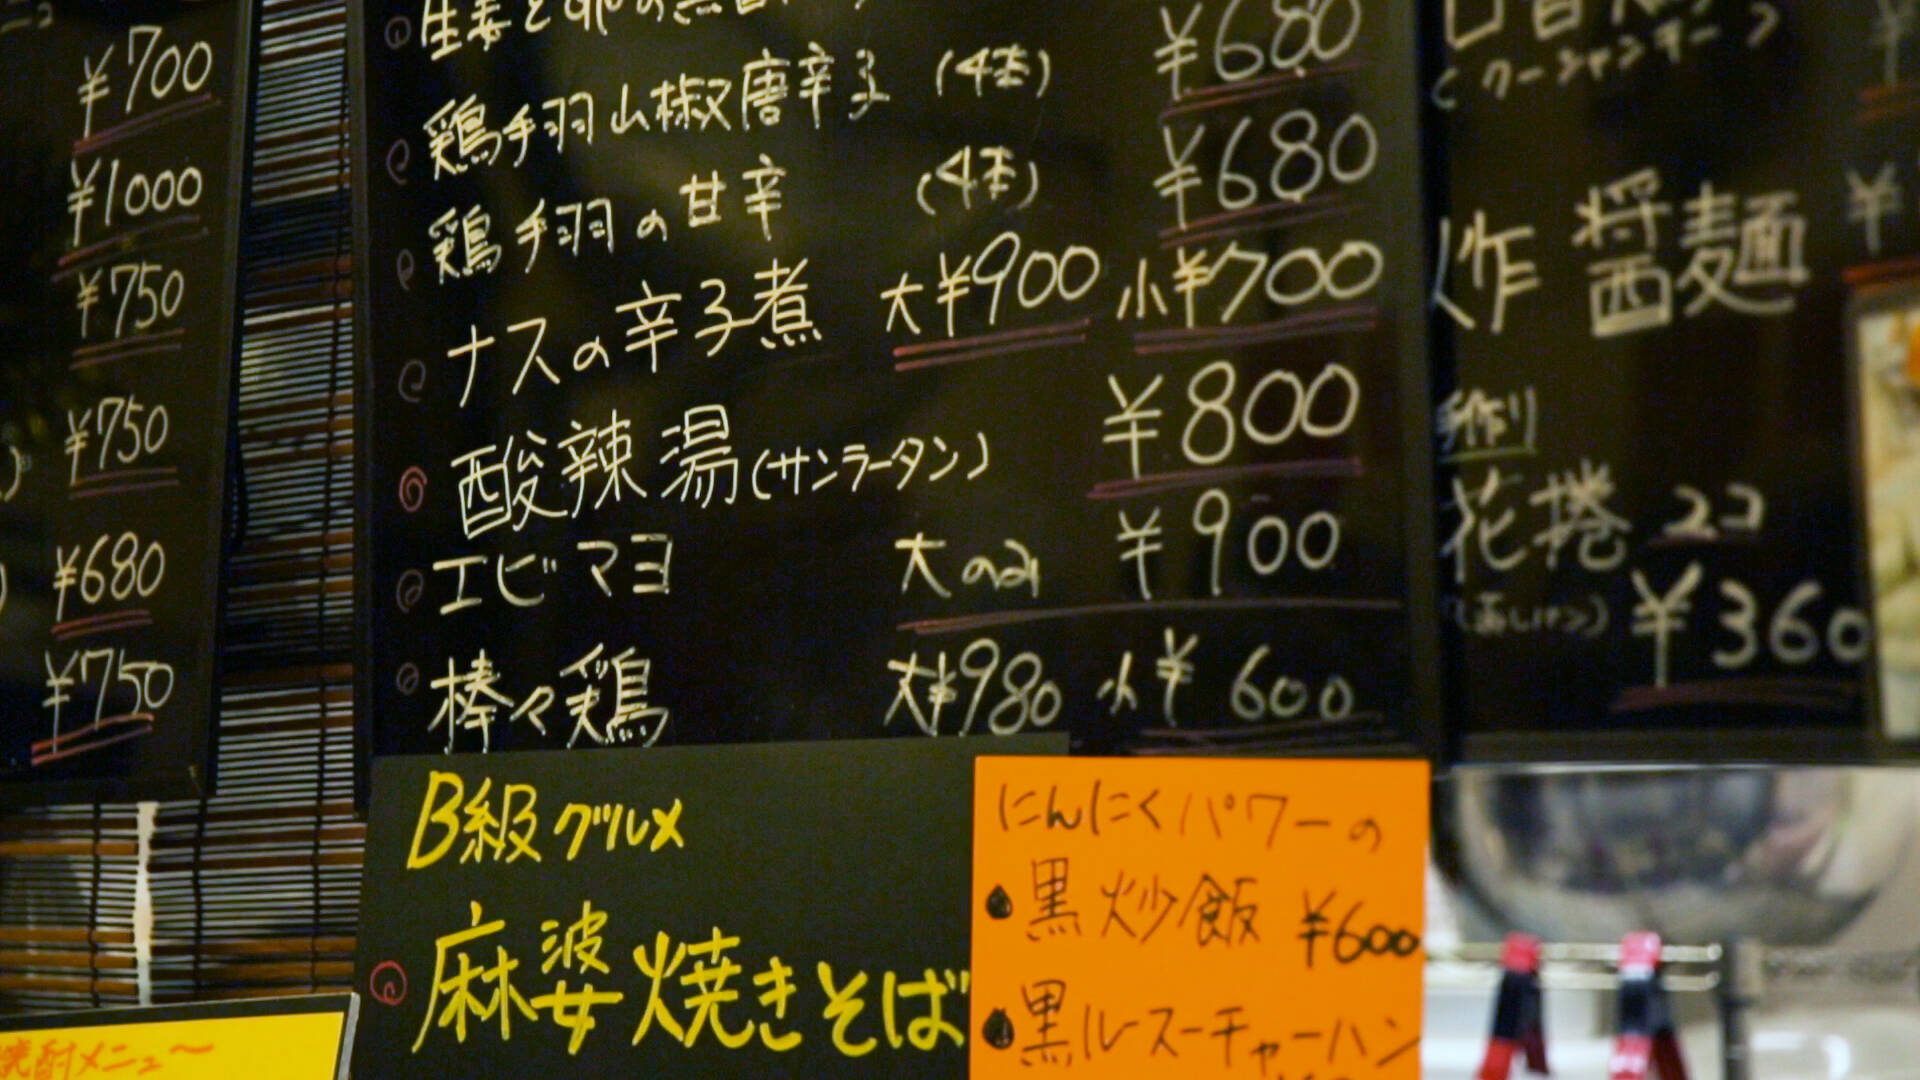 名物は真っ黒な溶岩石からあげ。地元で愛される中華料理の名店